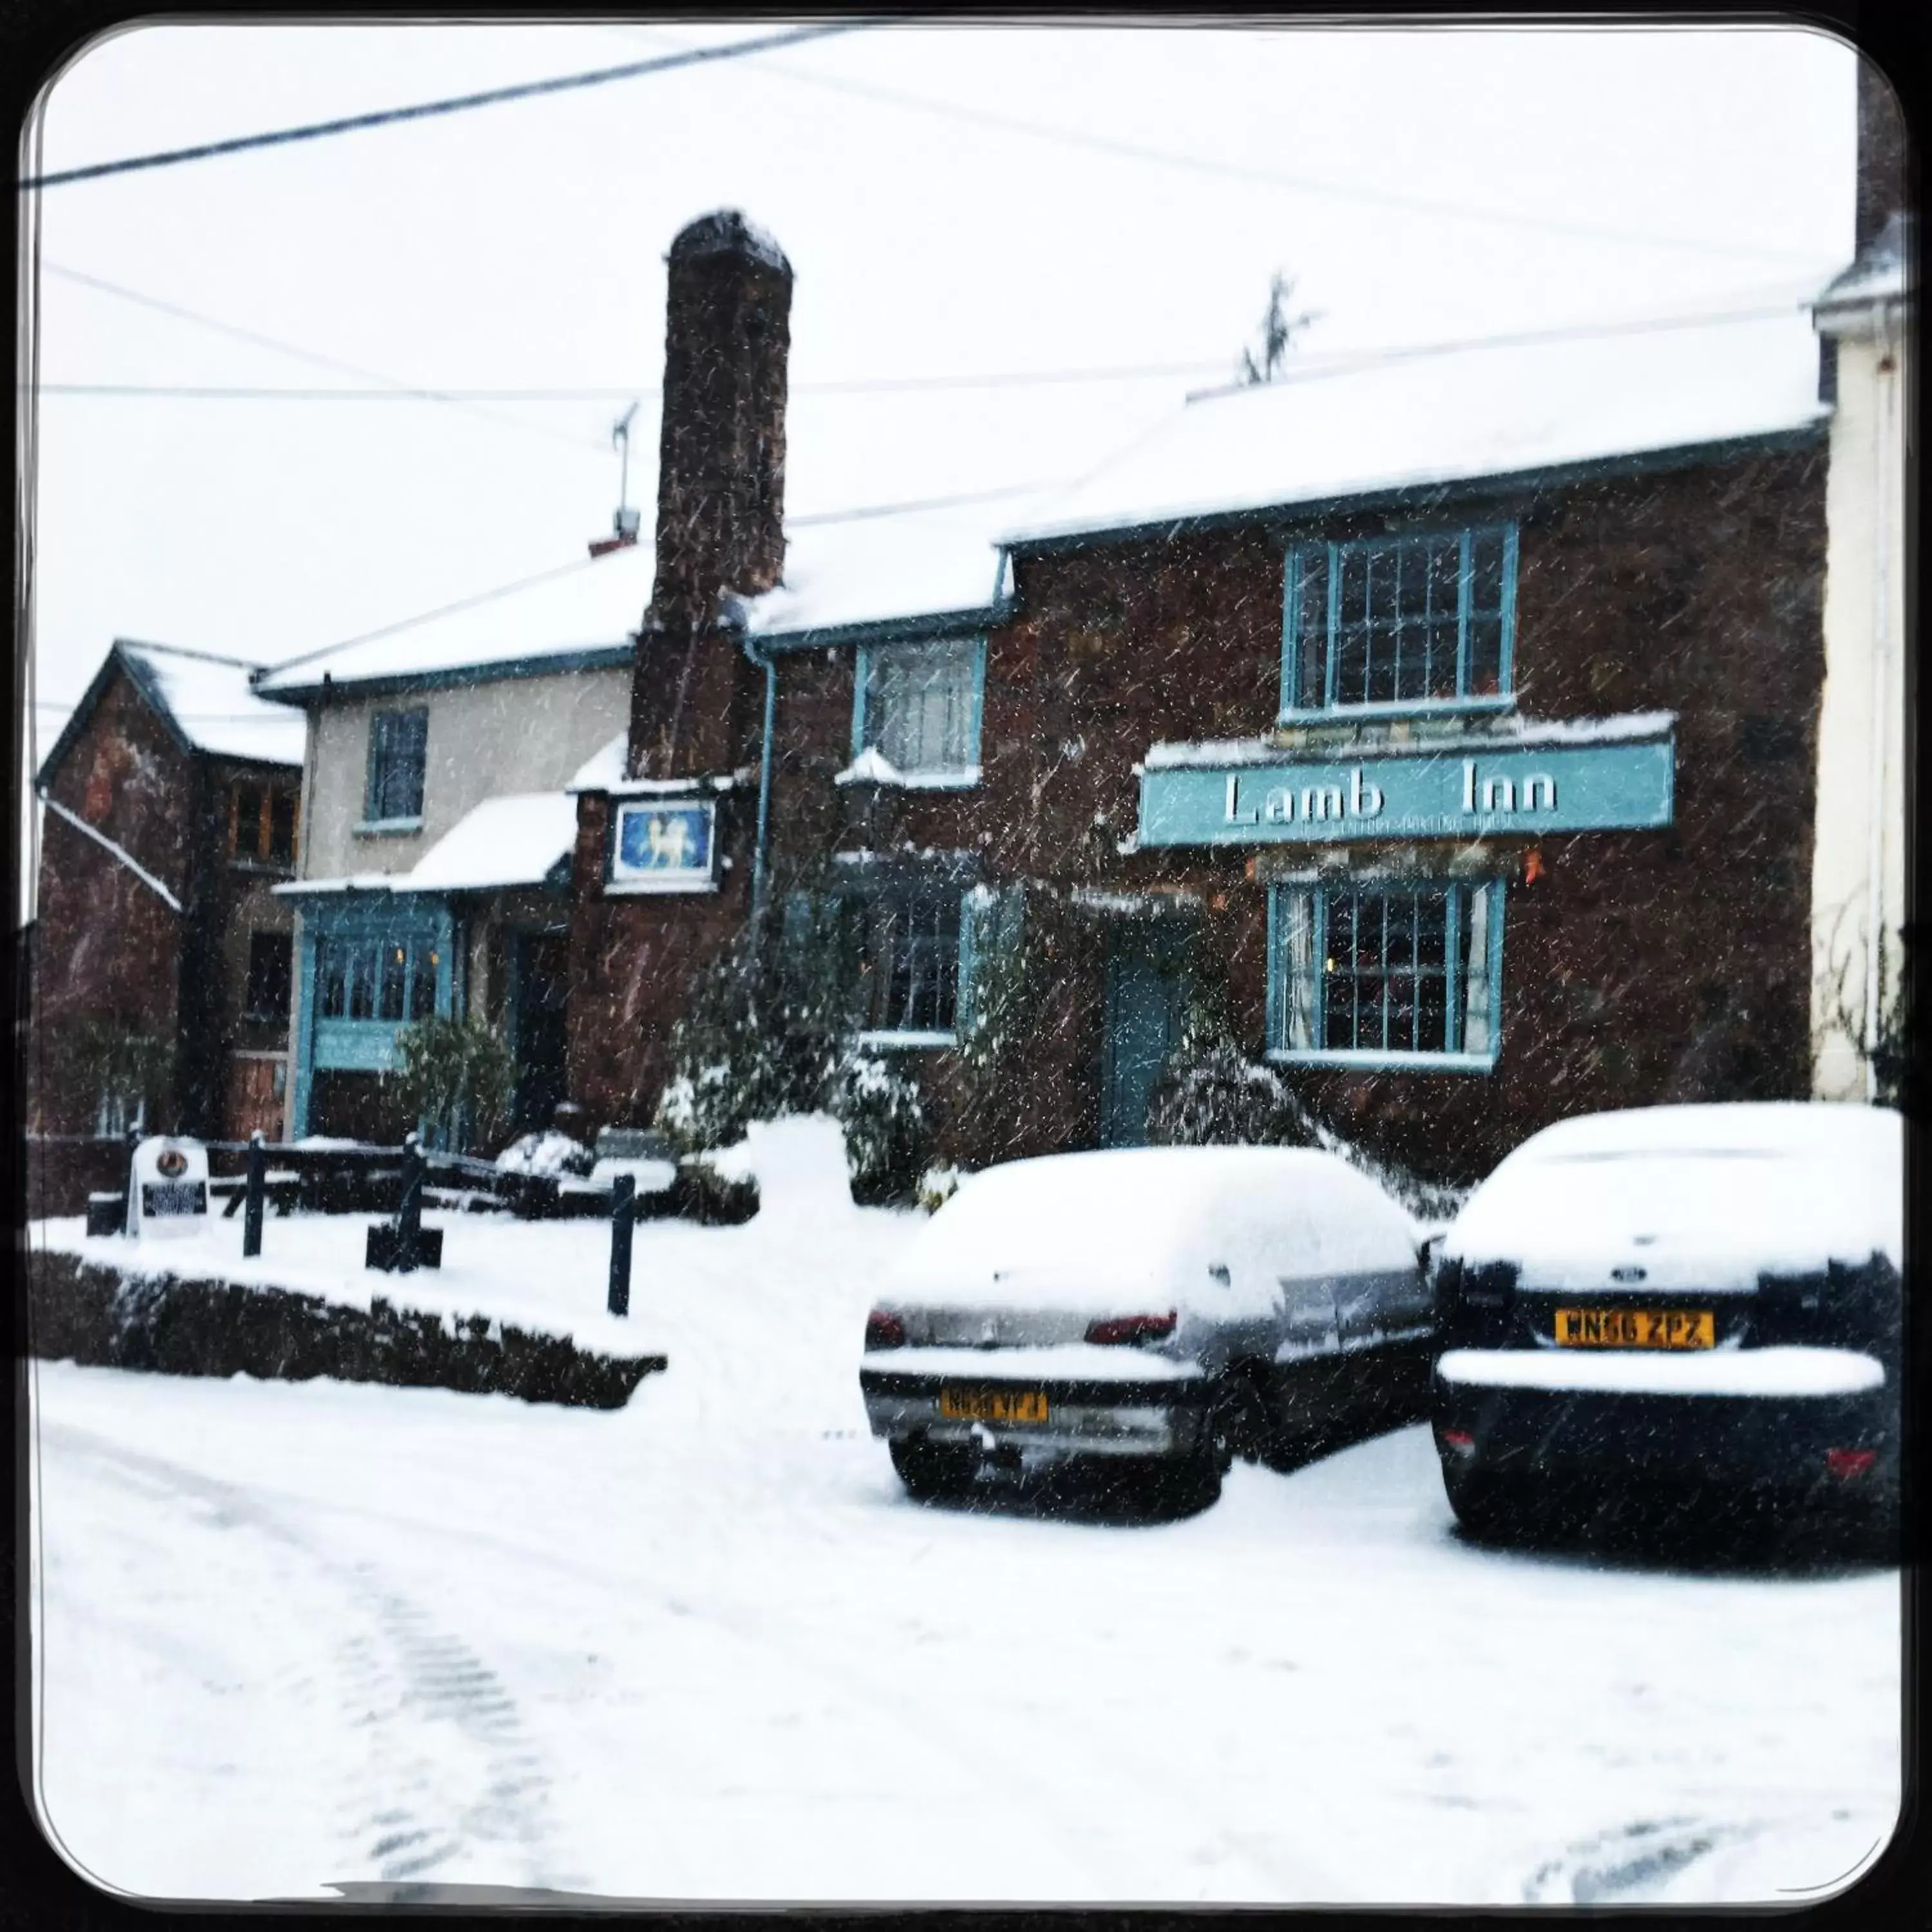 Street view, Winter in The Lamb Inn